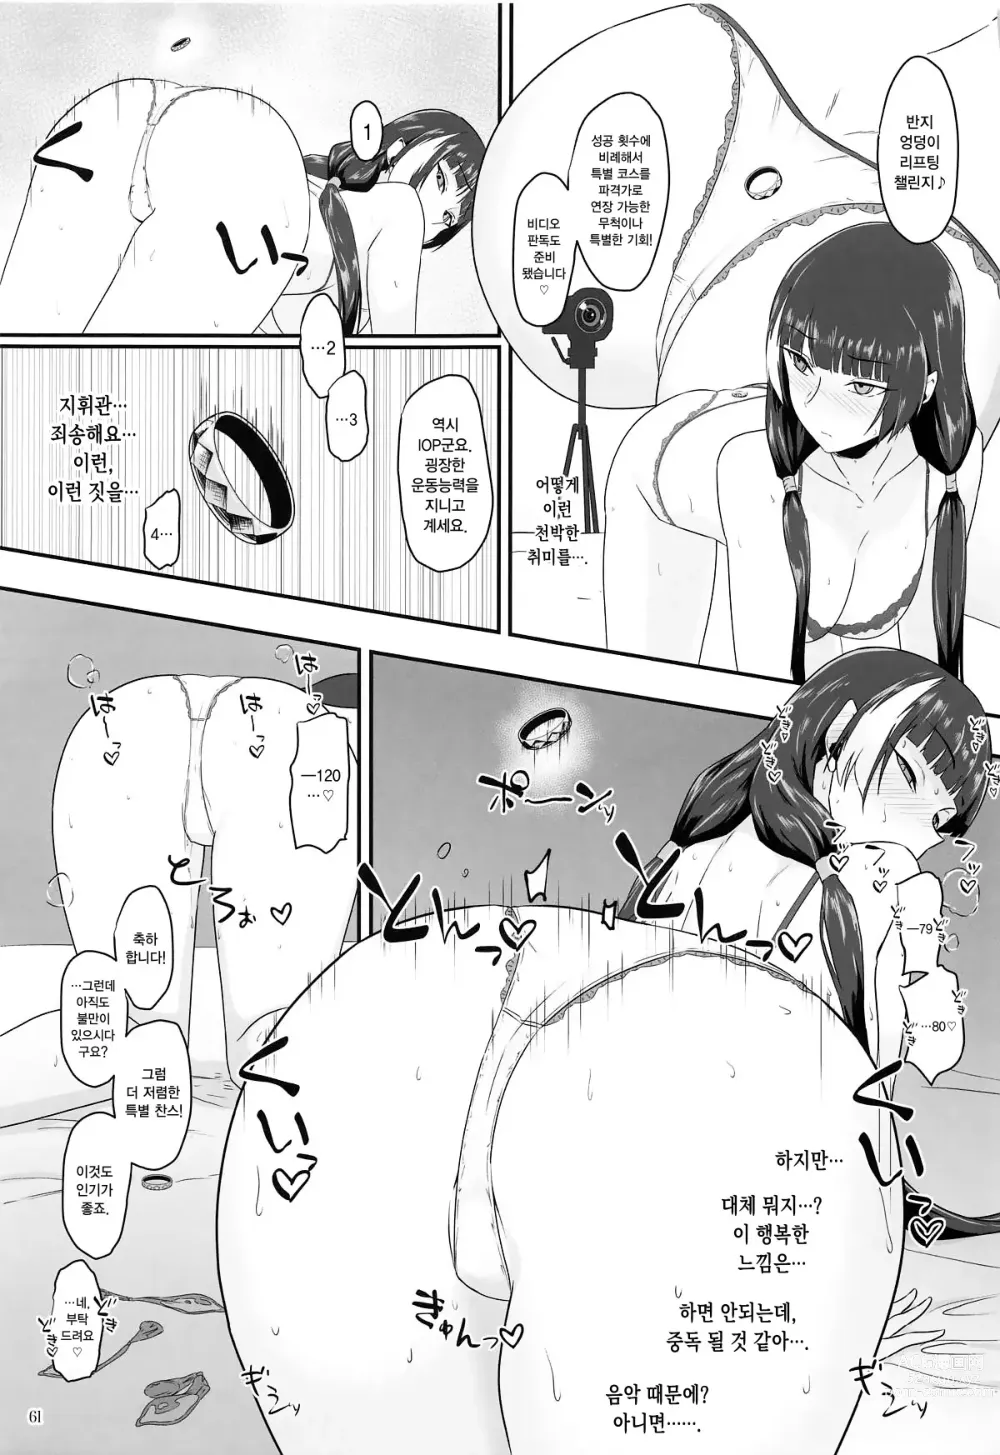 Page 9 of doujinshi 전술인형 전문 마사지 샵